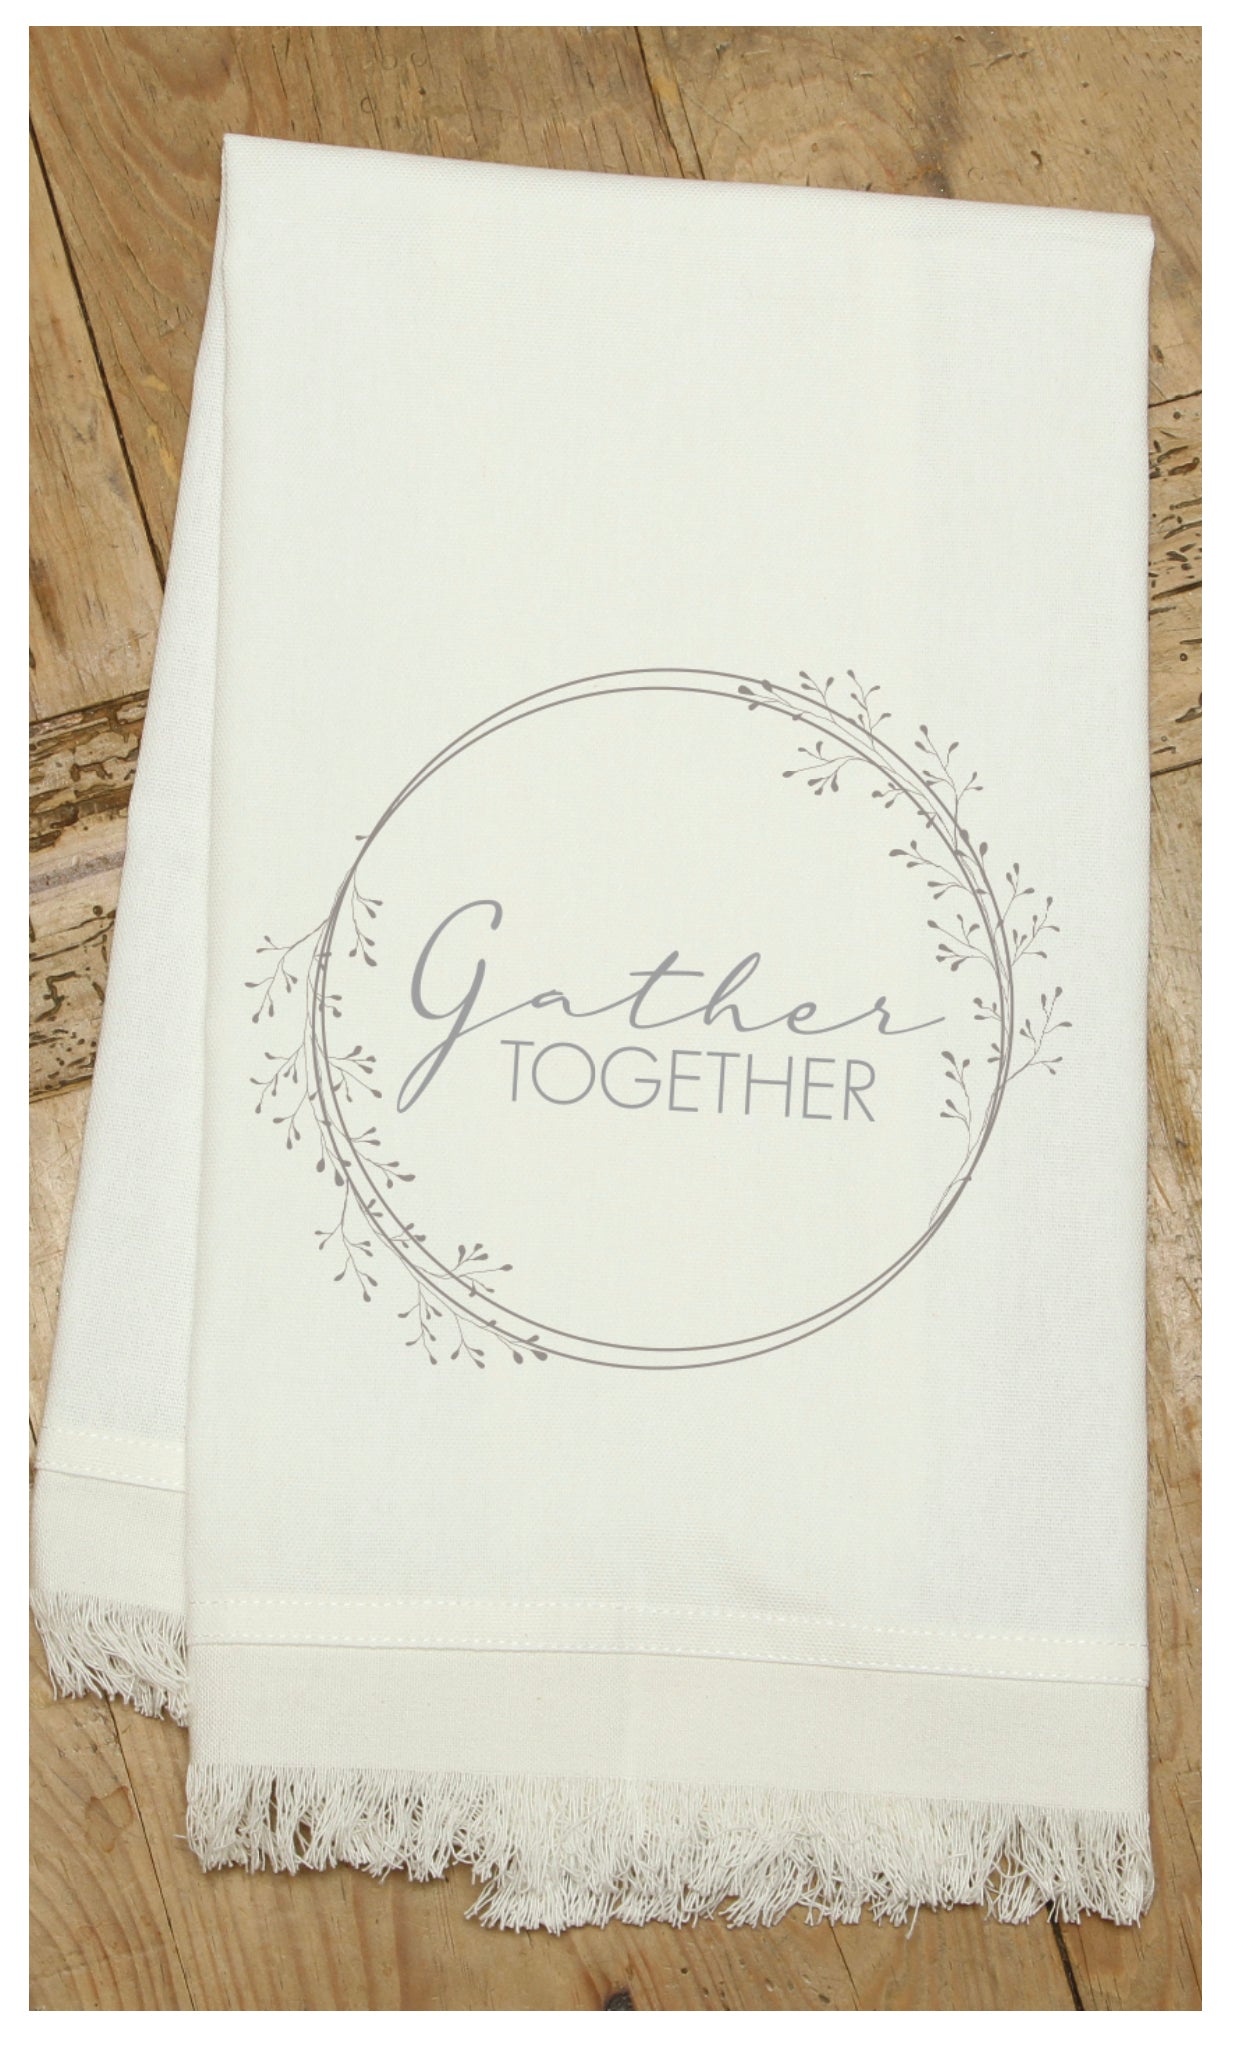 Gather together / Natural Kitchen Towel